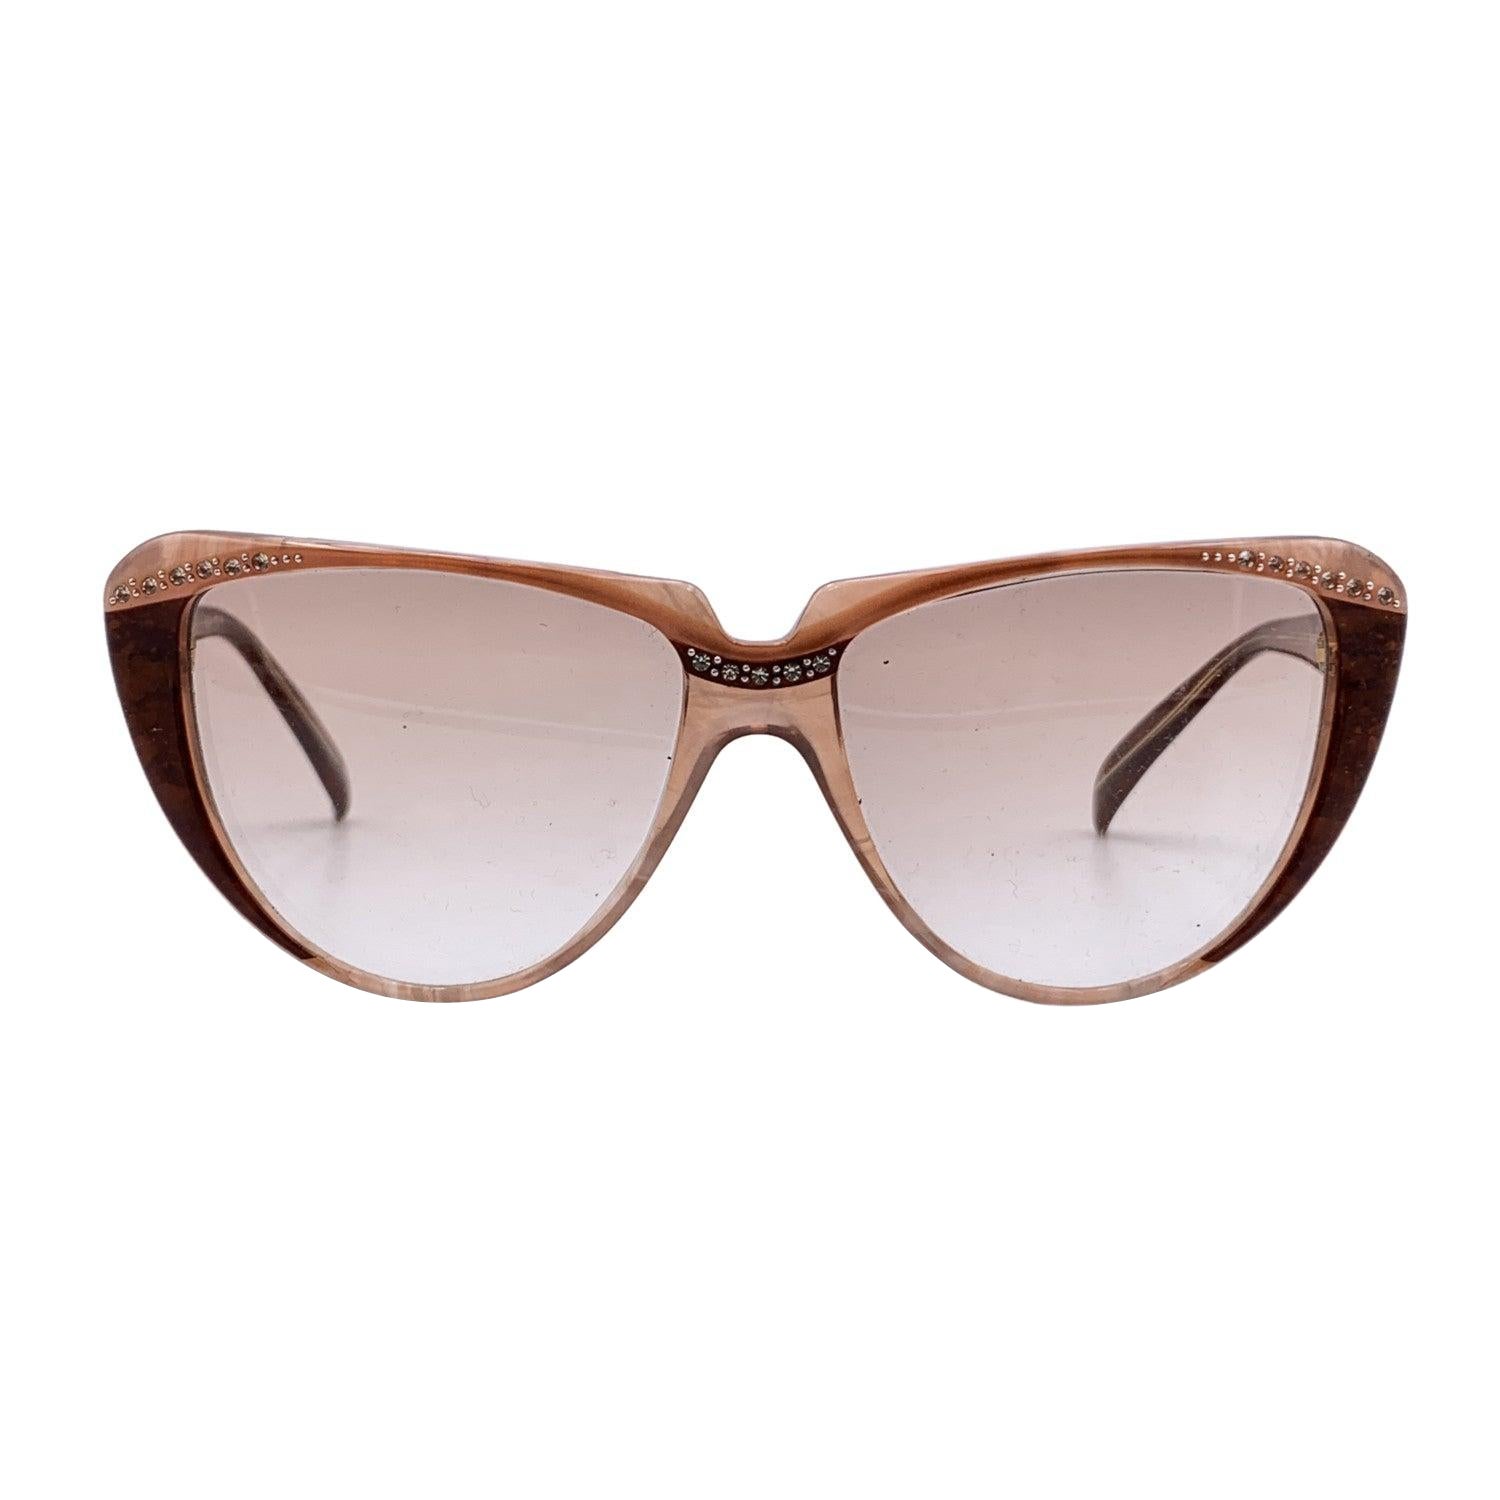 Yves Saint Laurent Vintage Cat Eye Sunglasses 8704 PO 74 50/20 125mm